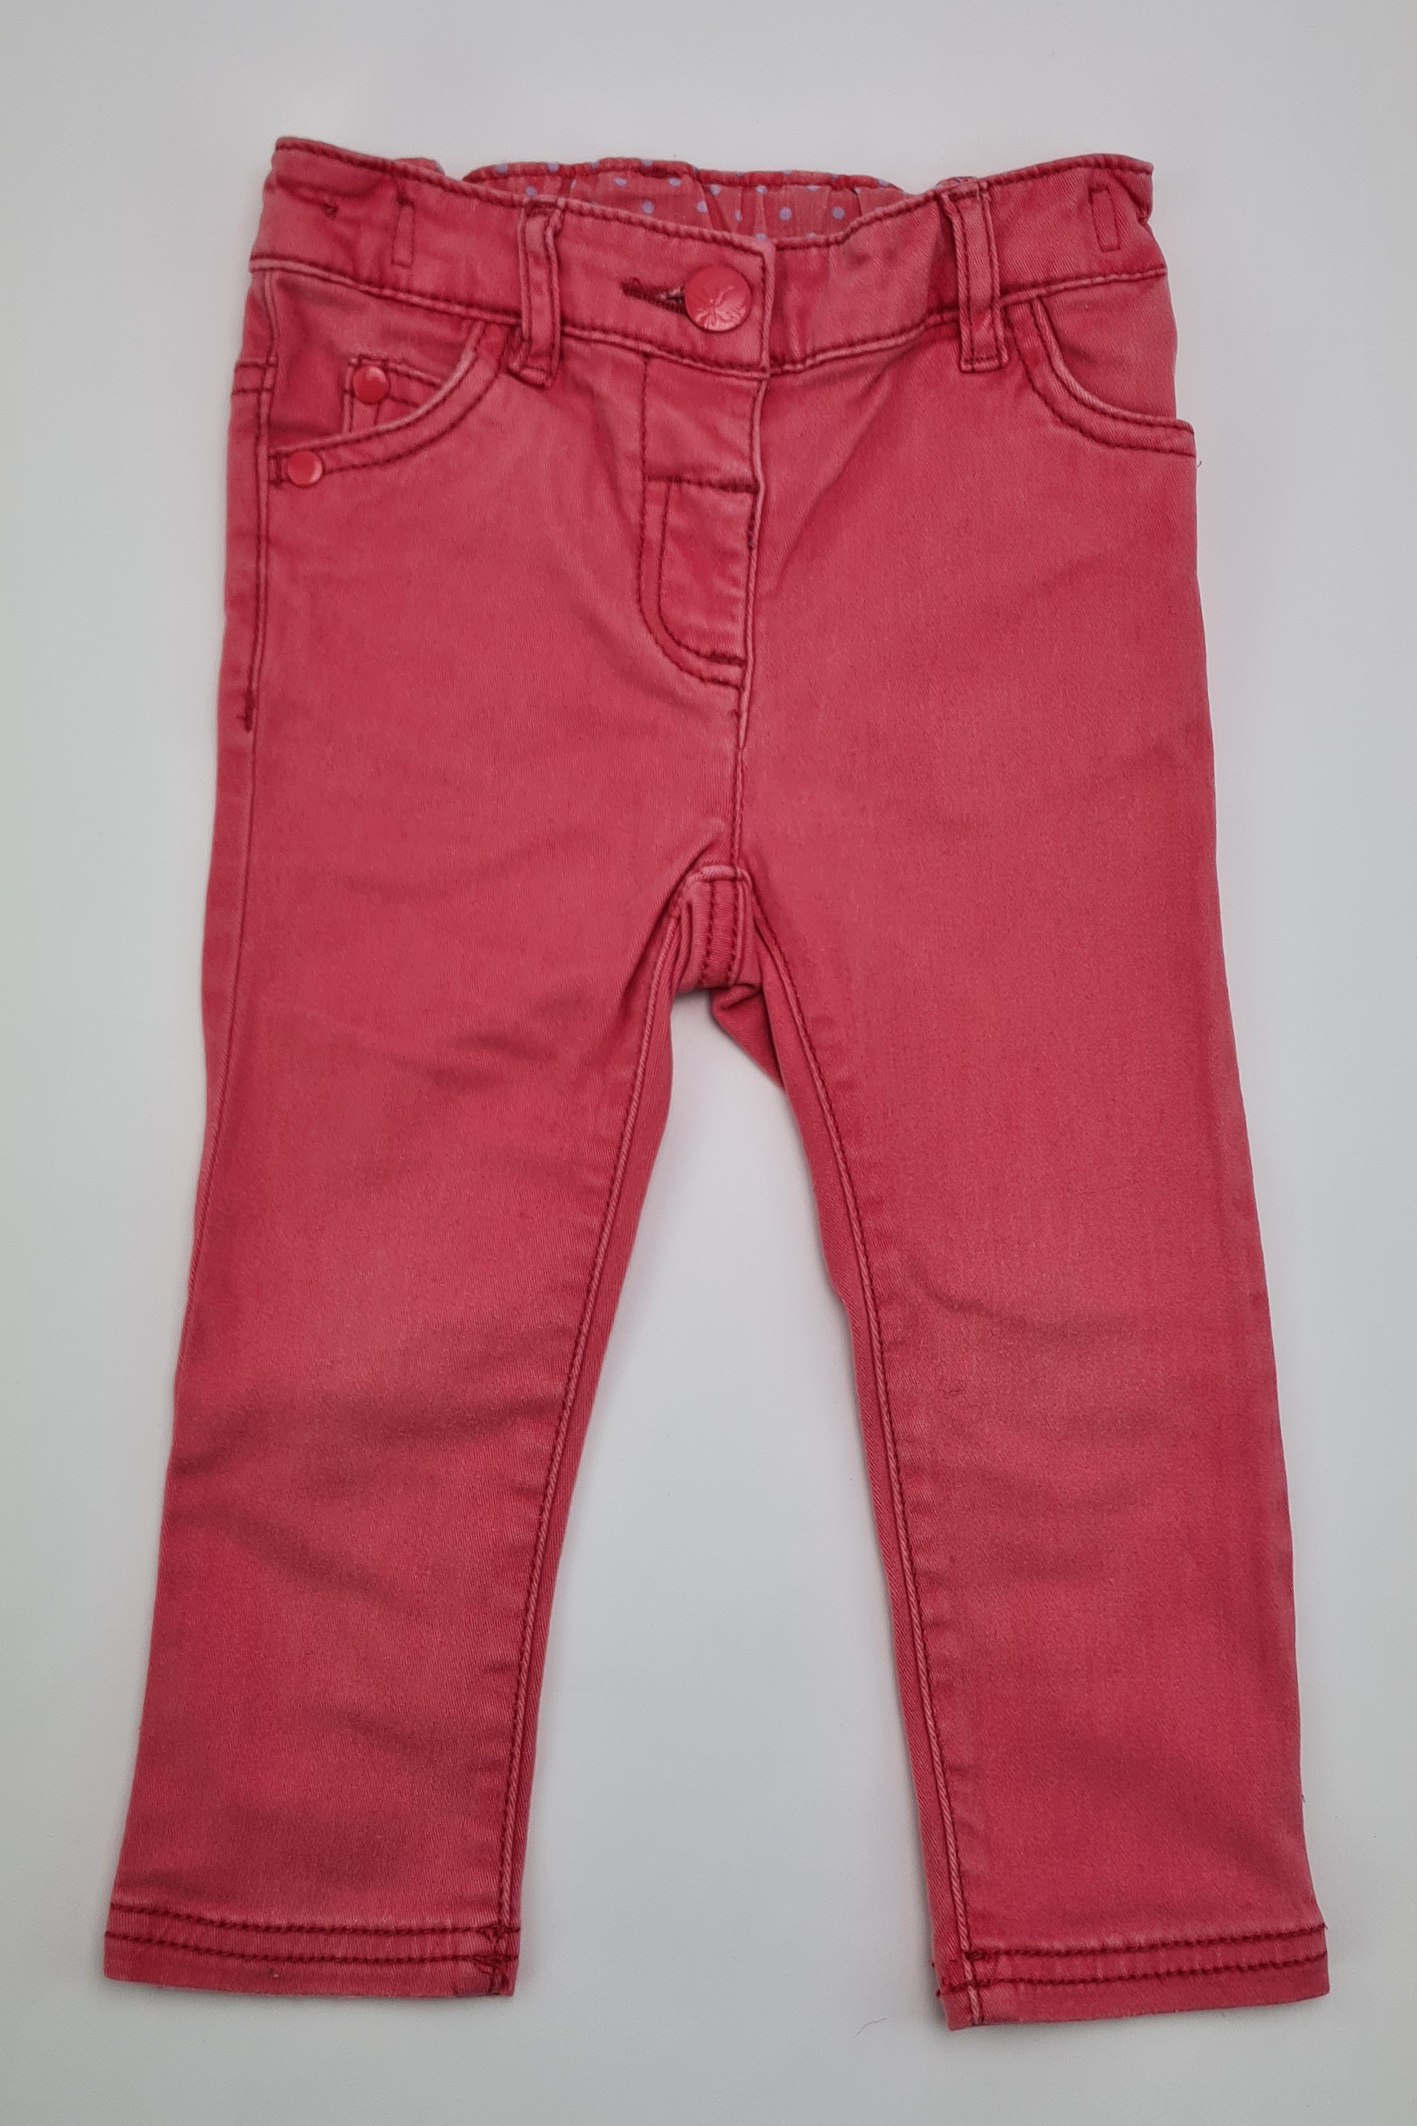 12-18 mois - Jeans rose (Suivant)